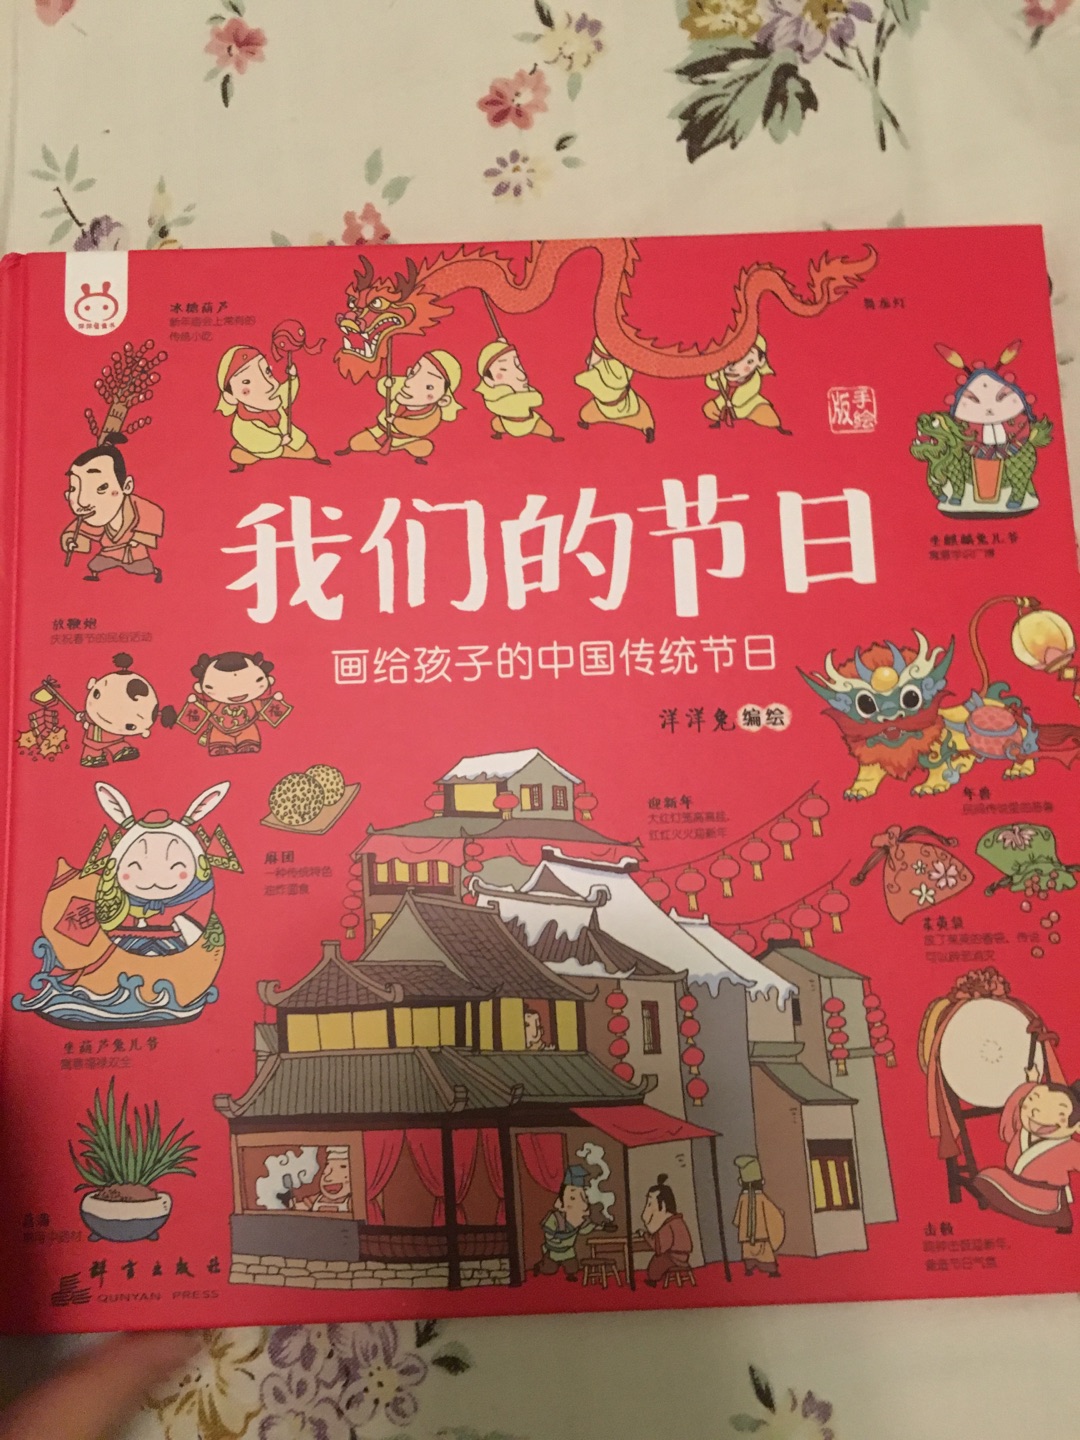 传统文化是我们家对孩子教育一个比较重要的内容，买了很多传统文化的书，希望宝宝对我们中国自己的节日自己的文化有认知，这本书还是比较好，漫画形式的图和文字组合，内容丰富有趣，让小朋友能够更加了解这些传统节日。